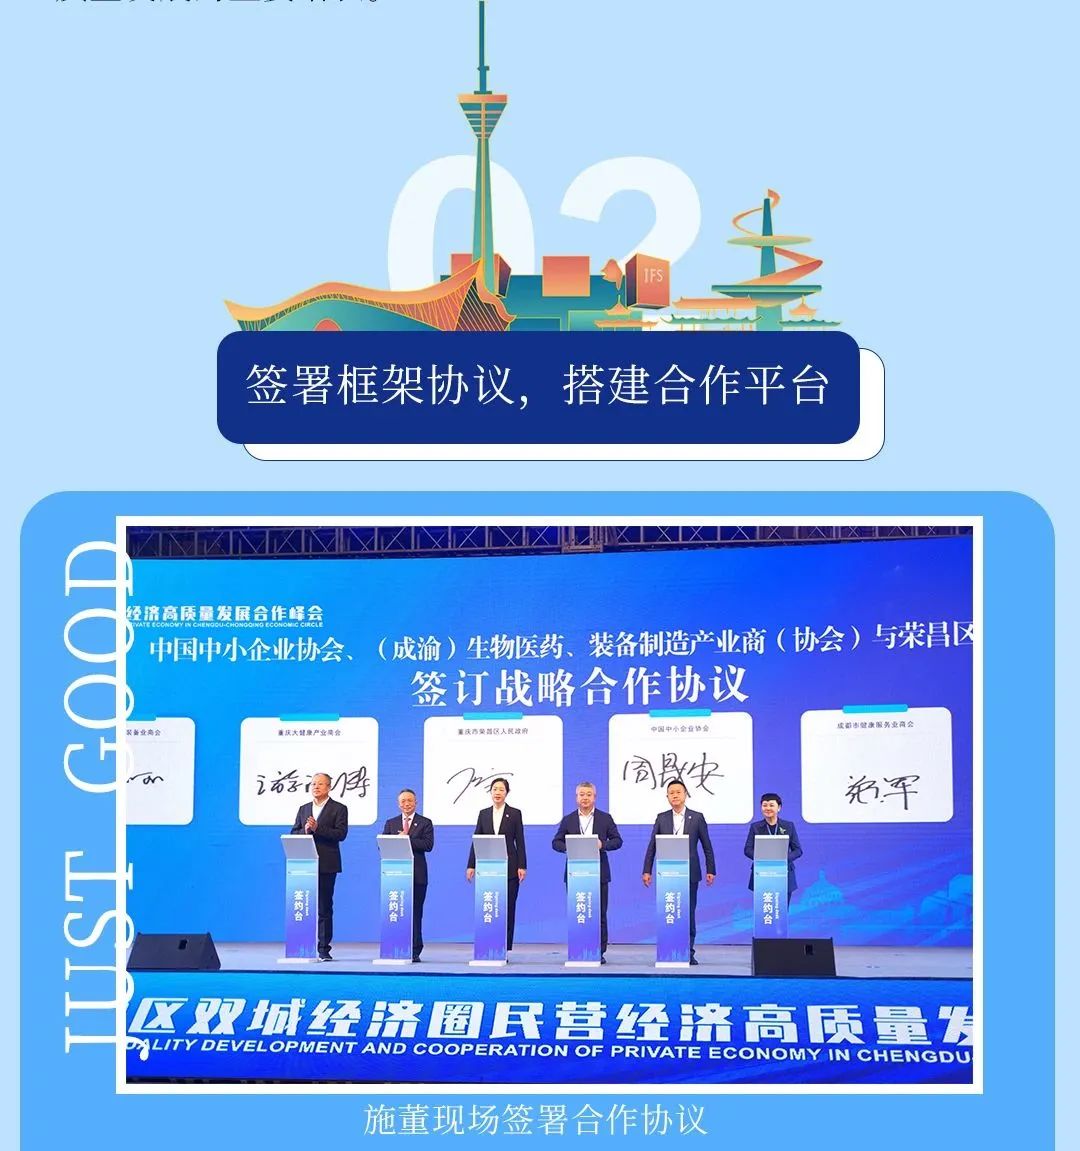 Wapampando Shi Jun adapita nawo ku msonkhano woyamba wa Chengdu-Chongqing Economic Circle Cooperation Summit